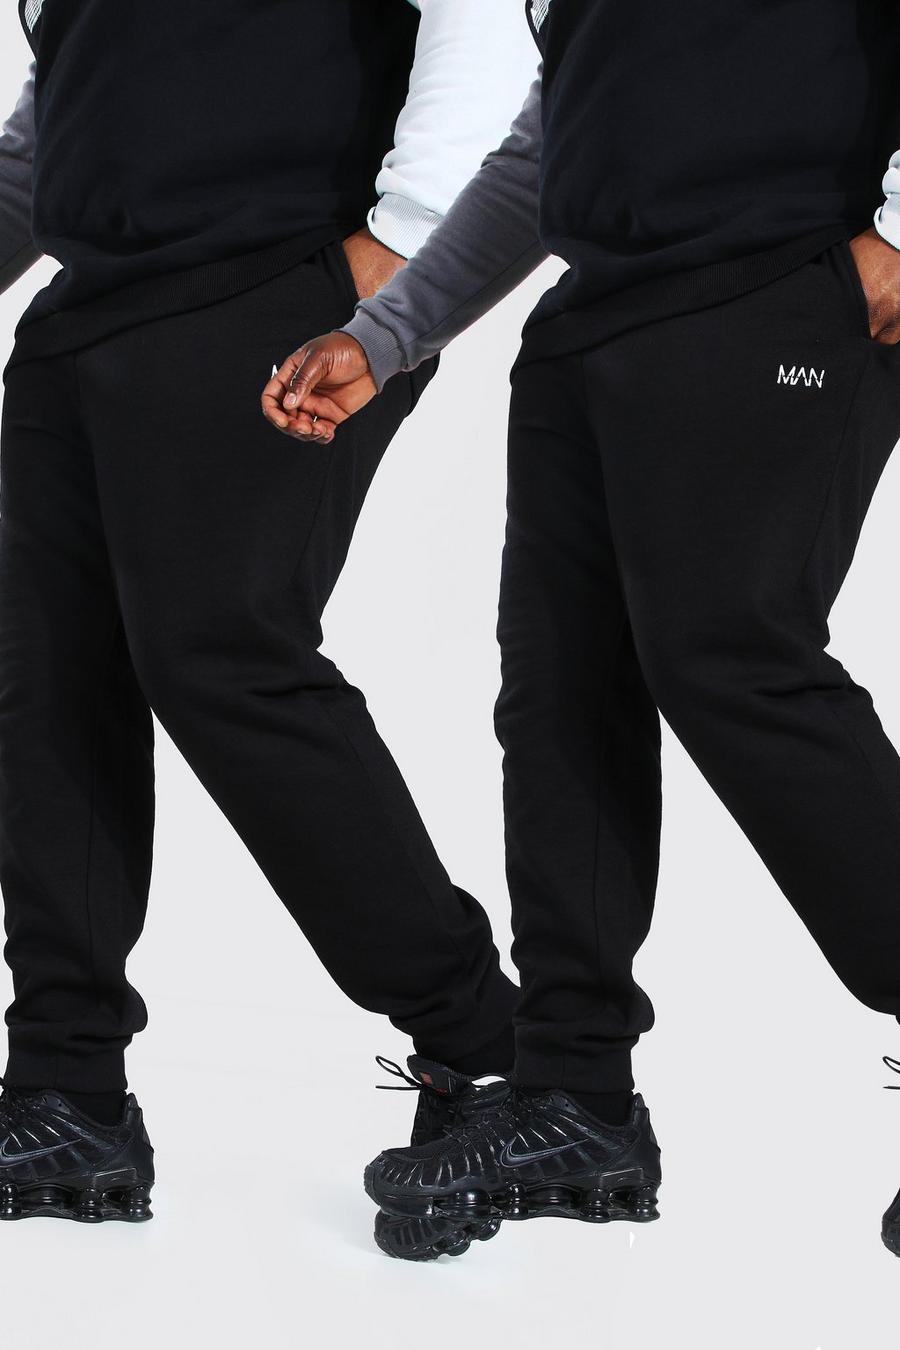 שחור מארז 2 מכנסי ריצה סקיני לגברים גדולים וגבוהים עם כיתוב MAN בקו חוצה image number 1